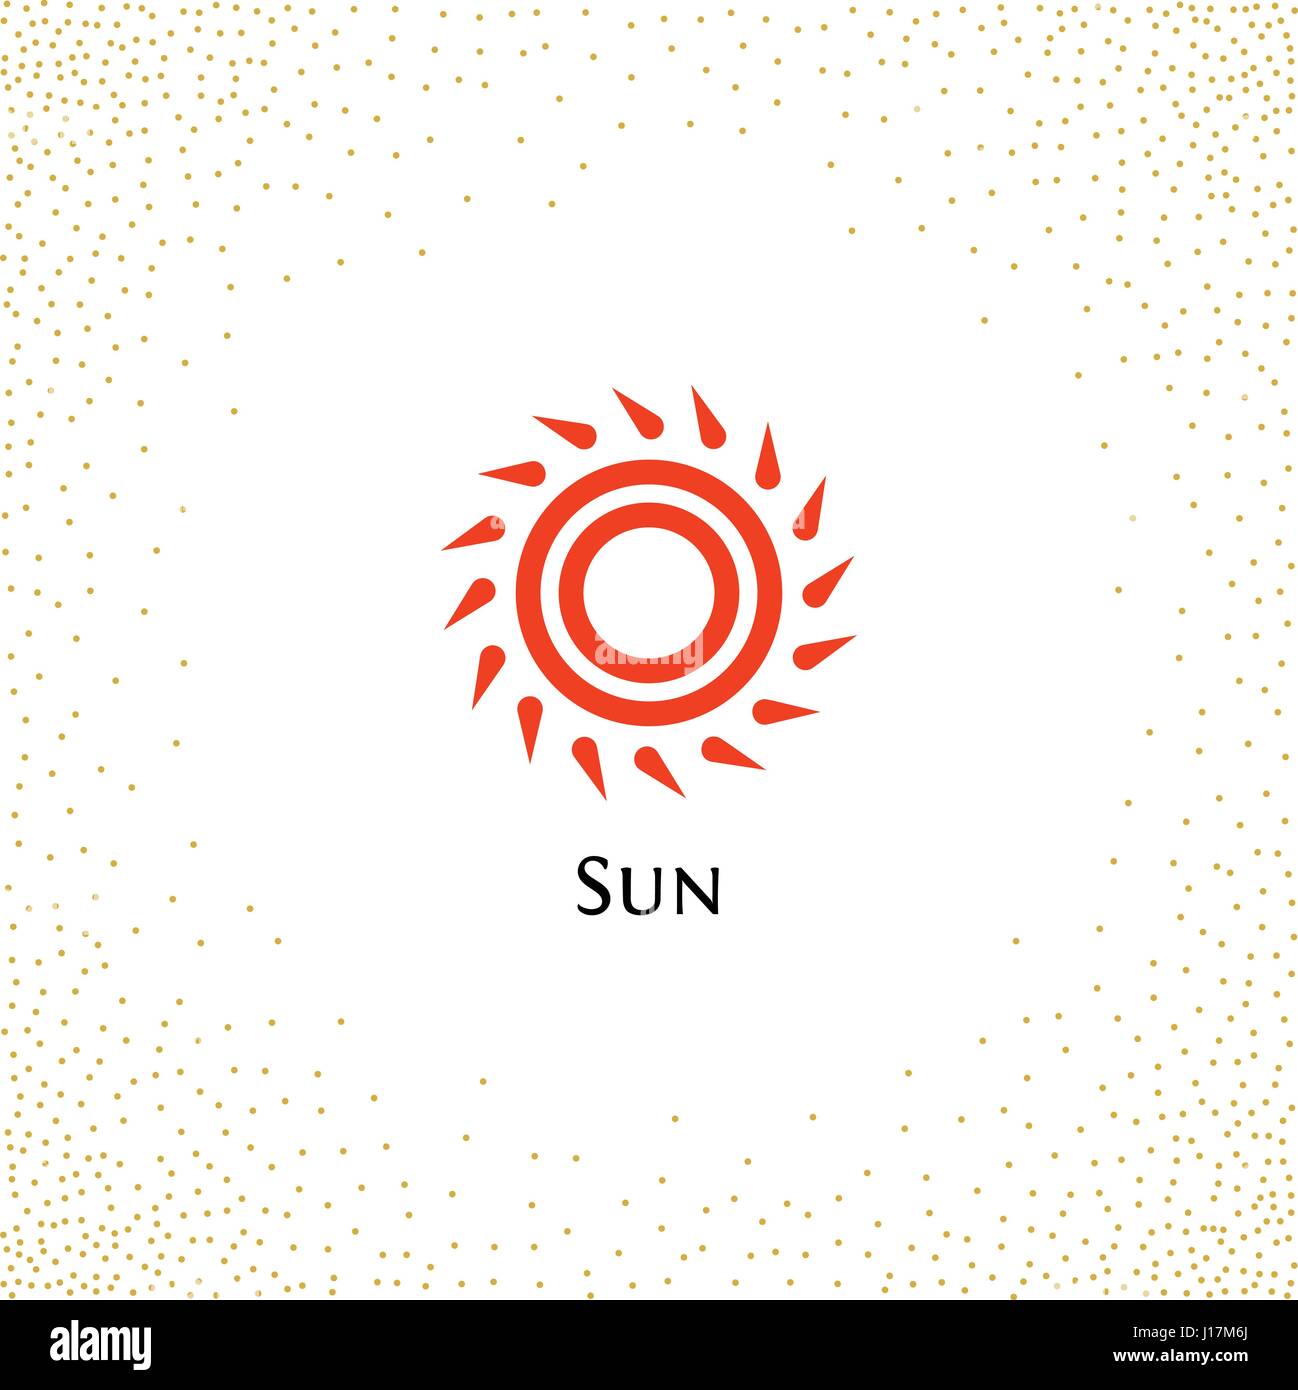 Résumé isolé forme ronde de couleur orange, logo logotype sun vector illustration sur un fond de points Illustration de Vecteur